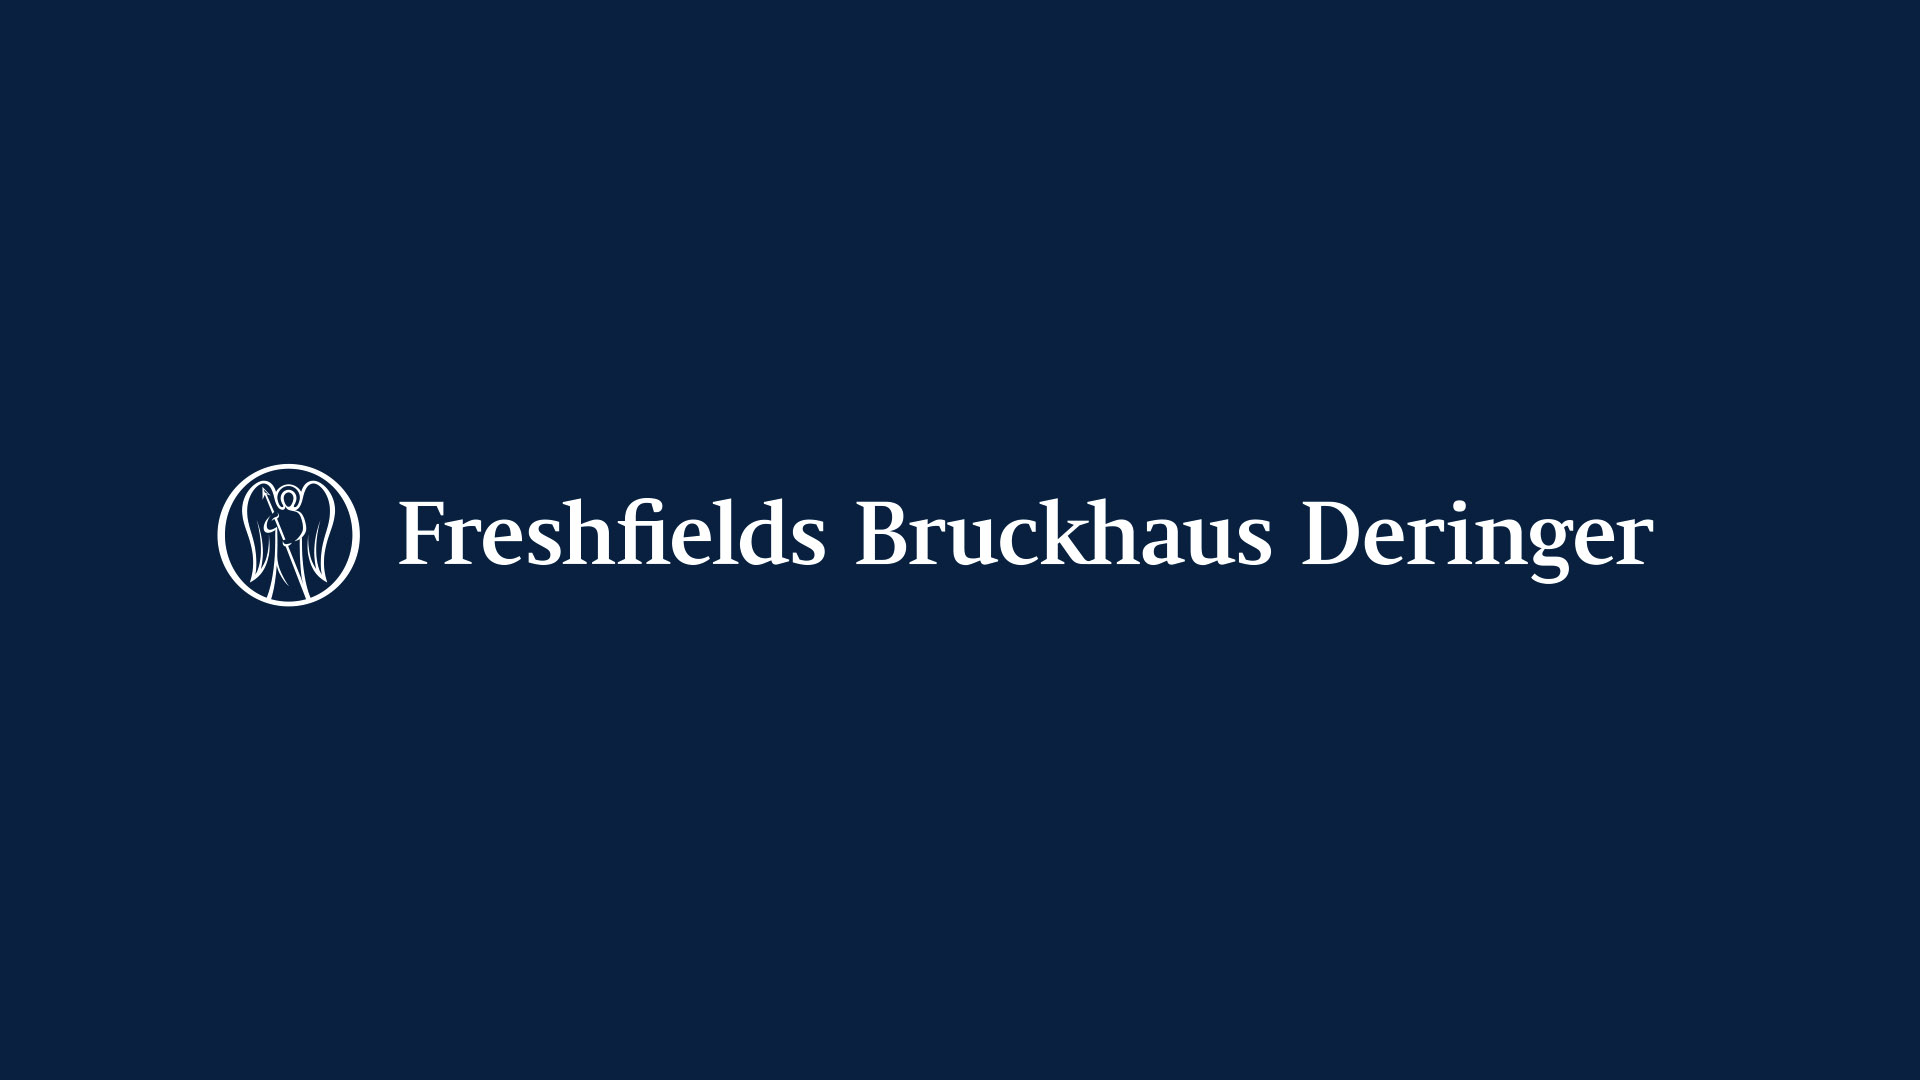 Freshfields Brand Identity